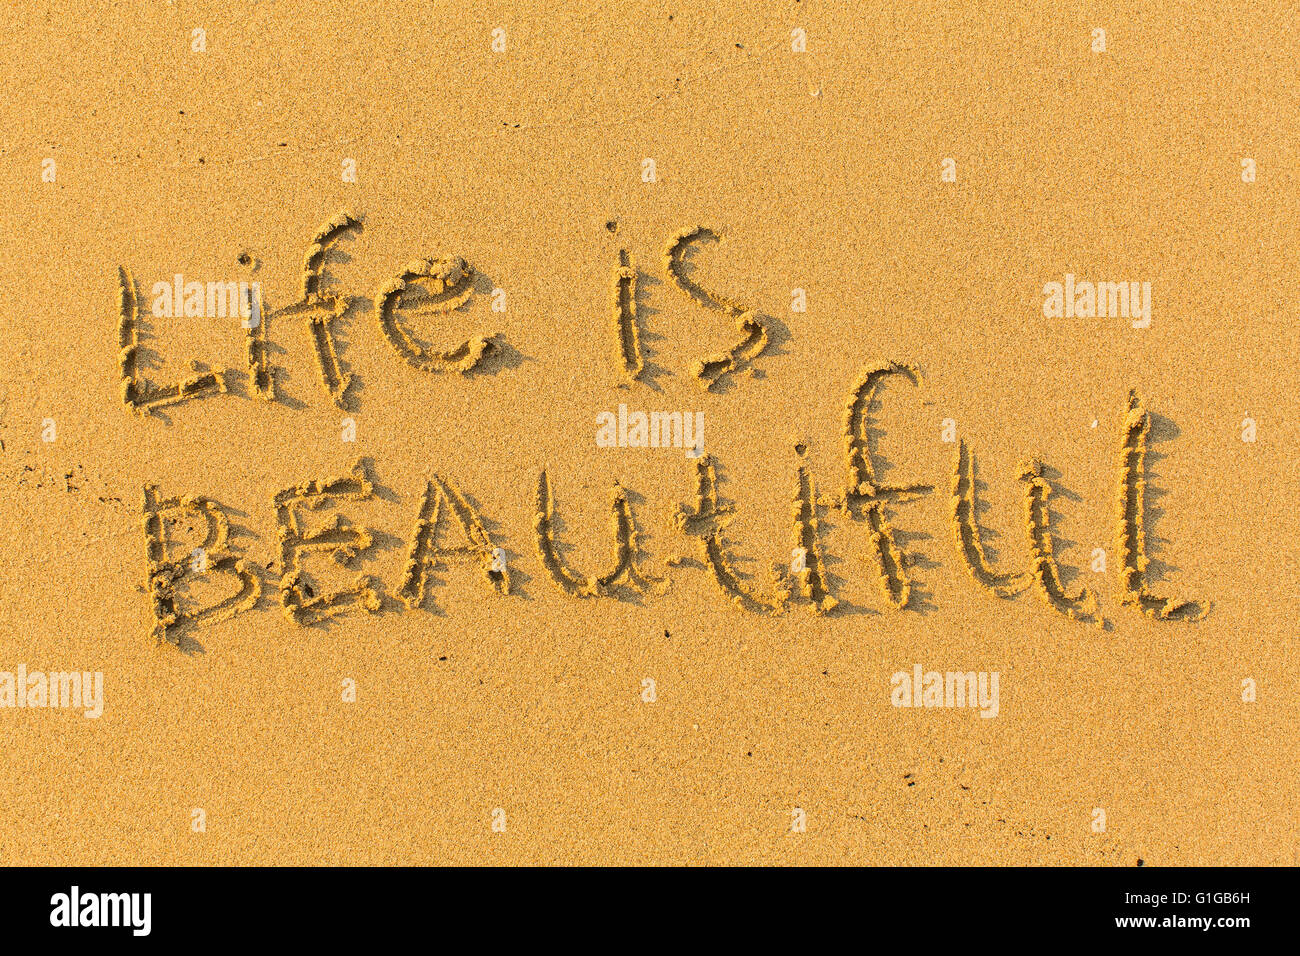 La vie est belle - texte écrit sur une plage de sable. Banque D'Images